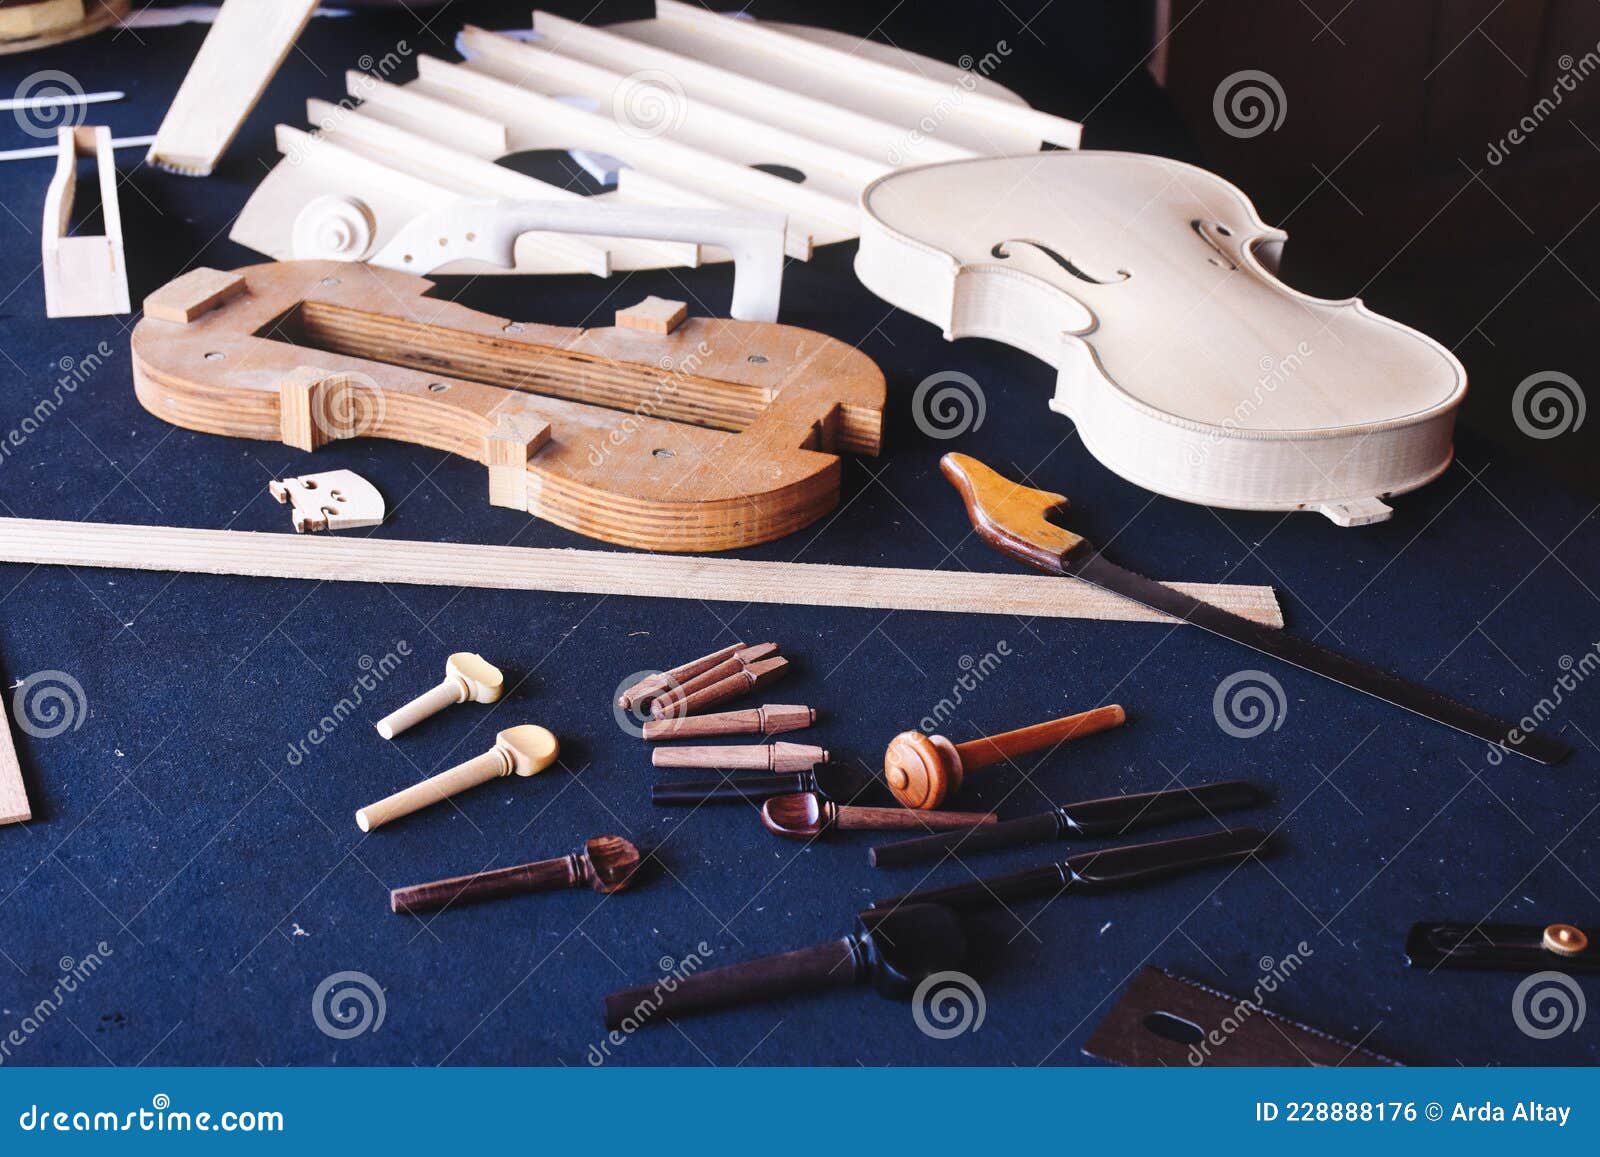 Violín Artesanal. Los Materiales Para Fabricar Un Violín Artesanal Están Sobre Mesa. Foto de archivo - Imagen instrumento, artesanal: 228888176